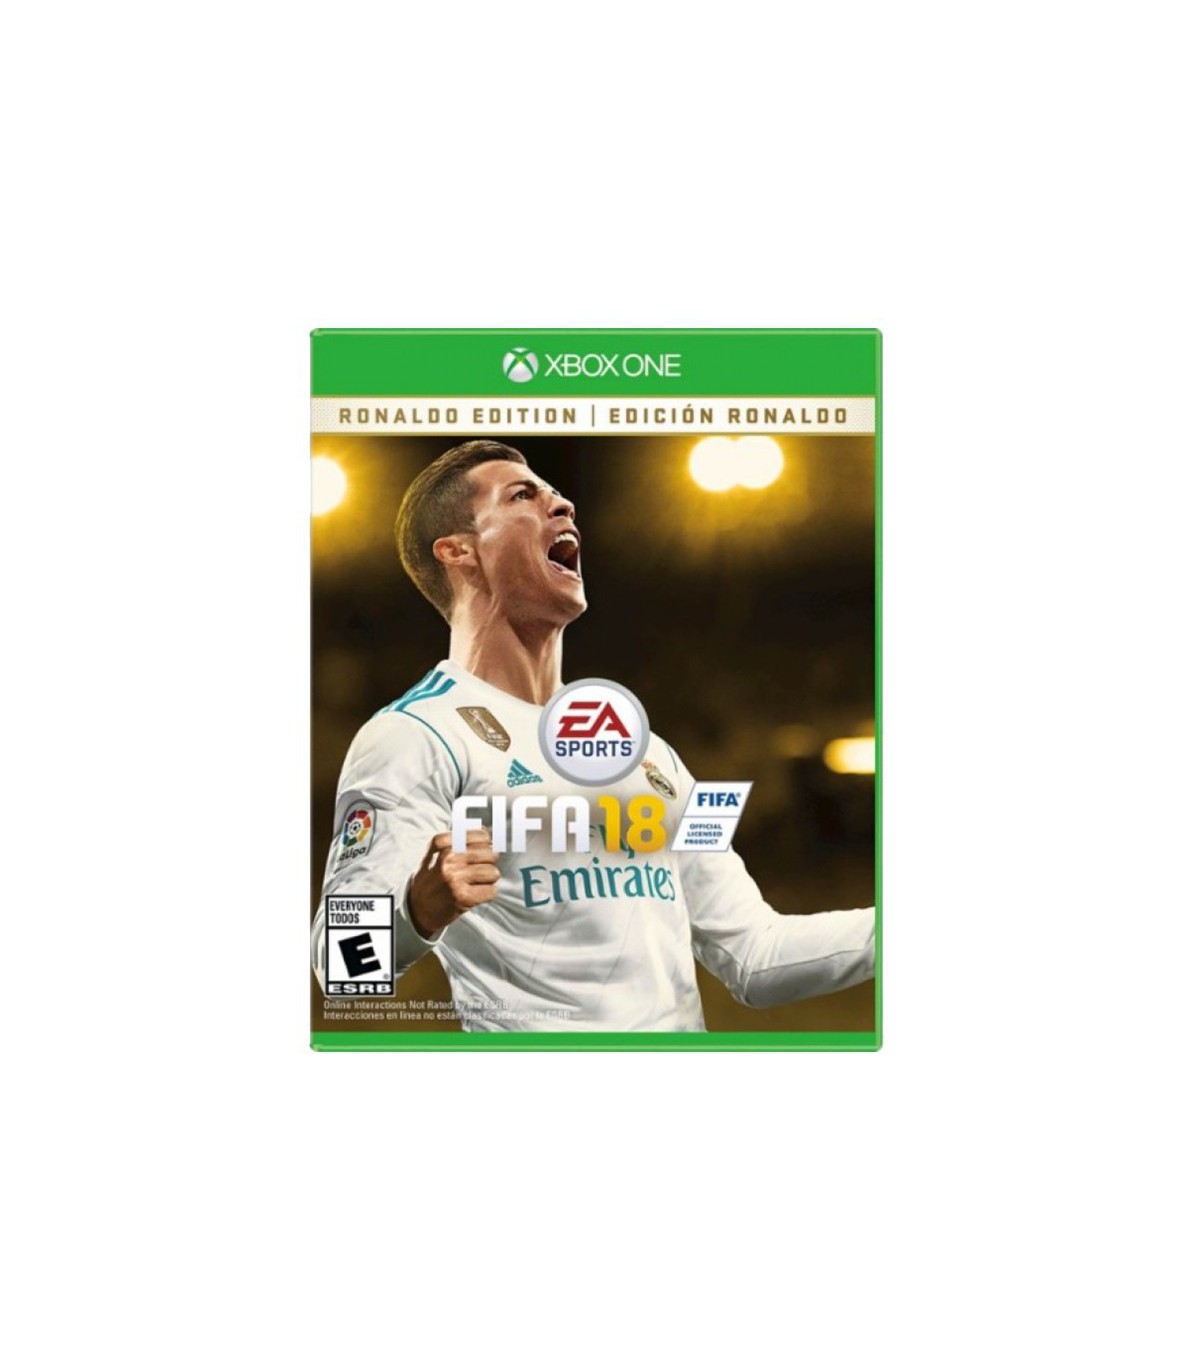 بازی FIFA 18 Standard Edition - پلی استیشن 4